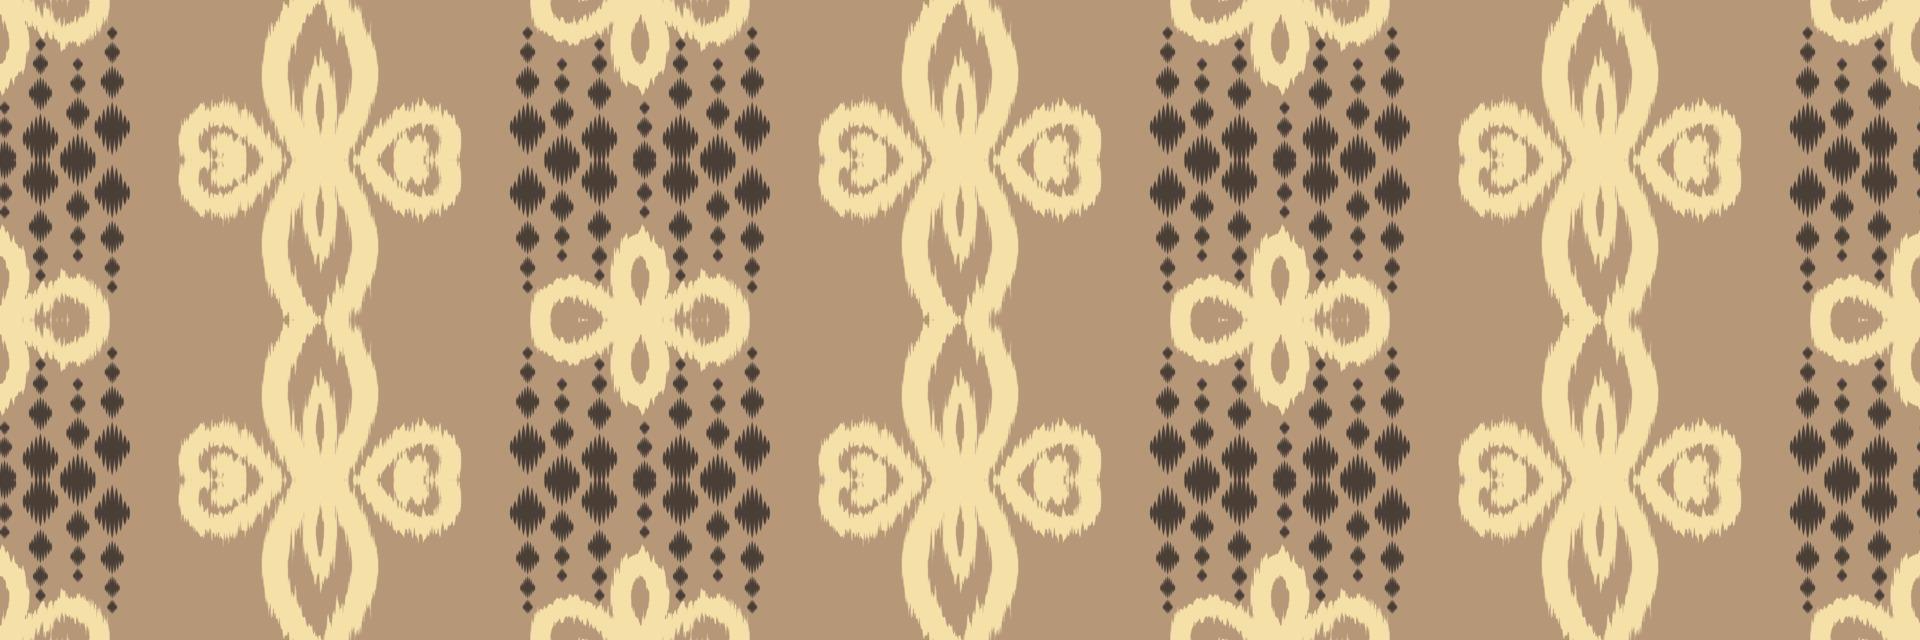 batik têxtil ikkat ou ikat diamante padrão sem costura design de vetor digital para impressão saree kurti borneo tecido borda escova símbolos amostras roupas de festa